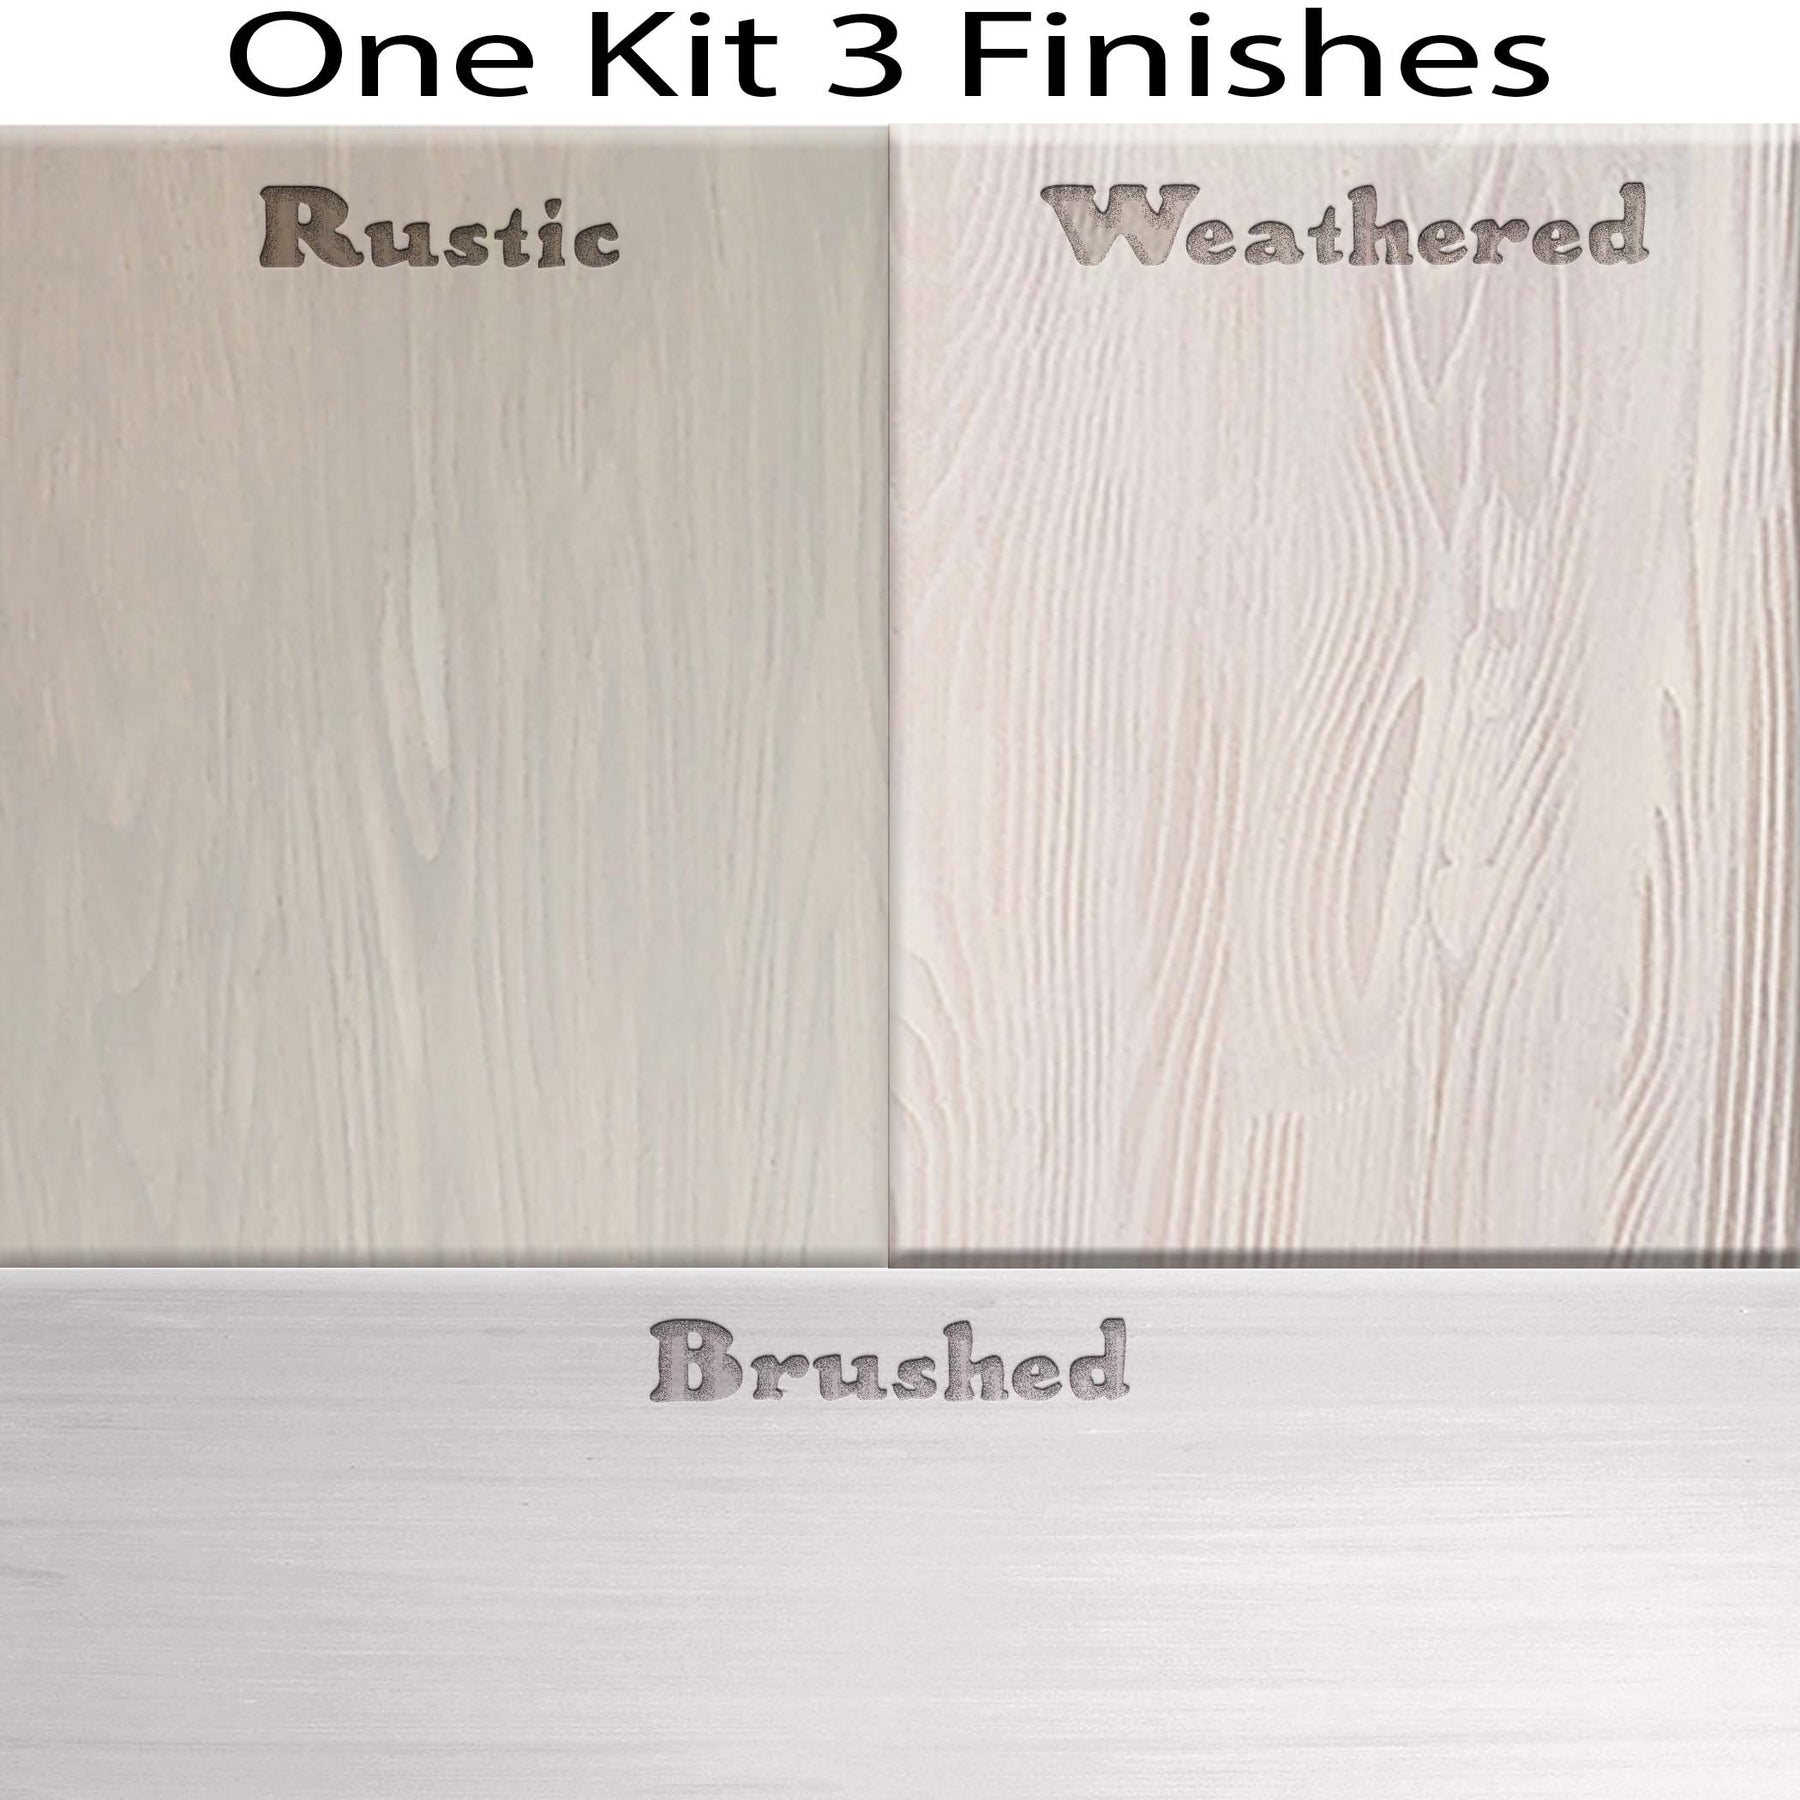 Multi-purpose Wood'n Kit (4x Lg) - White Wash